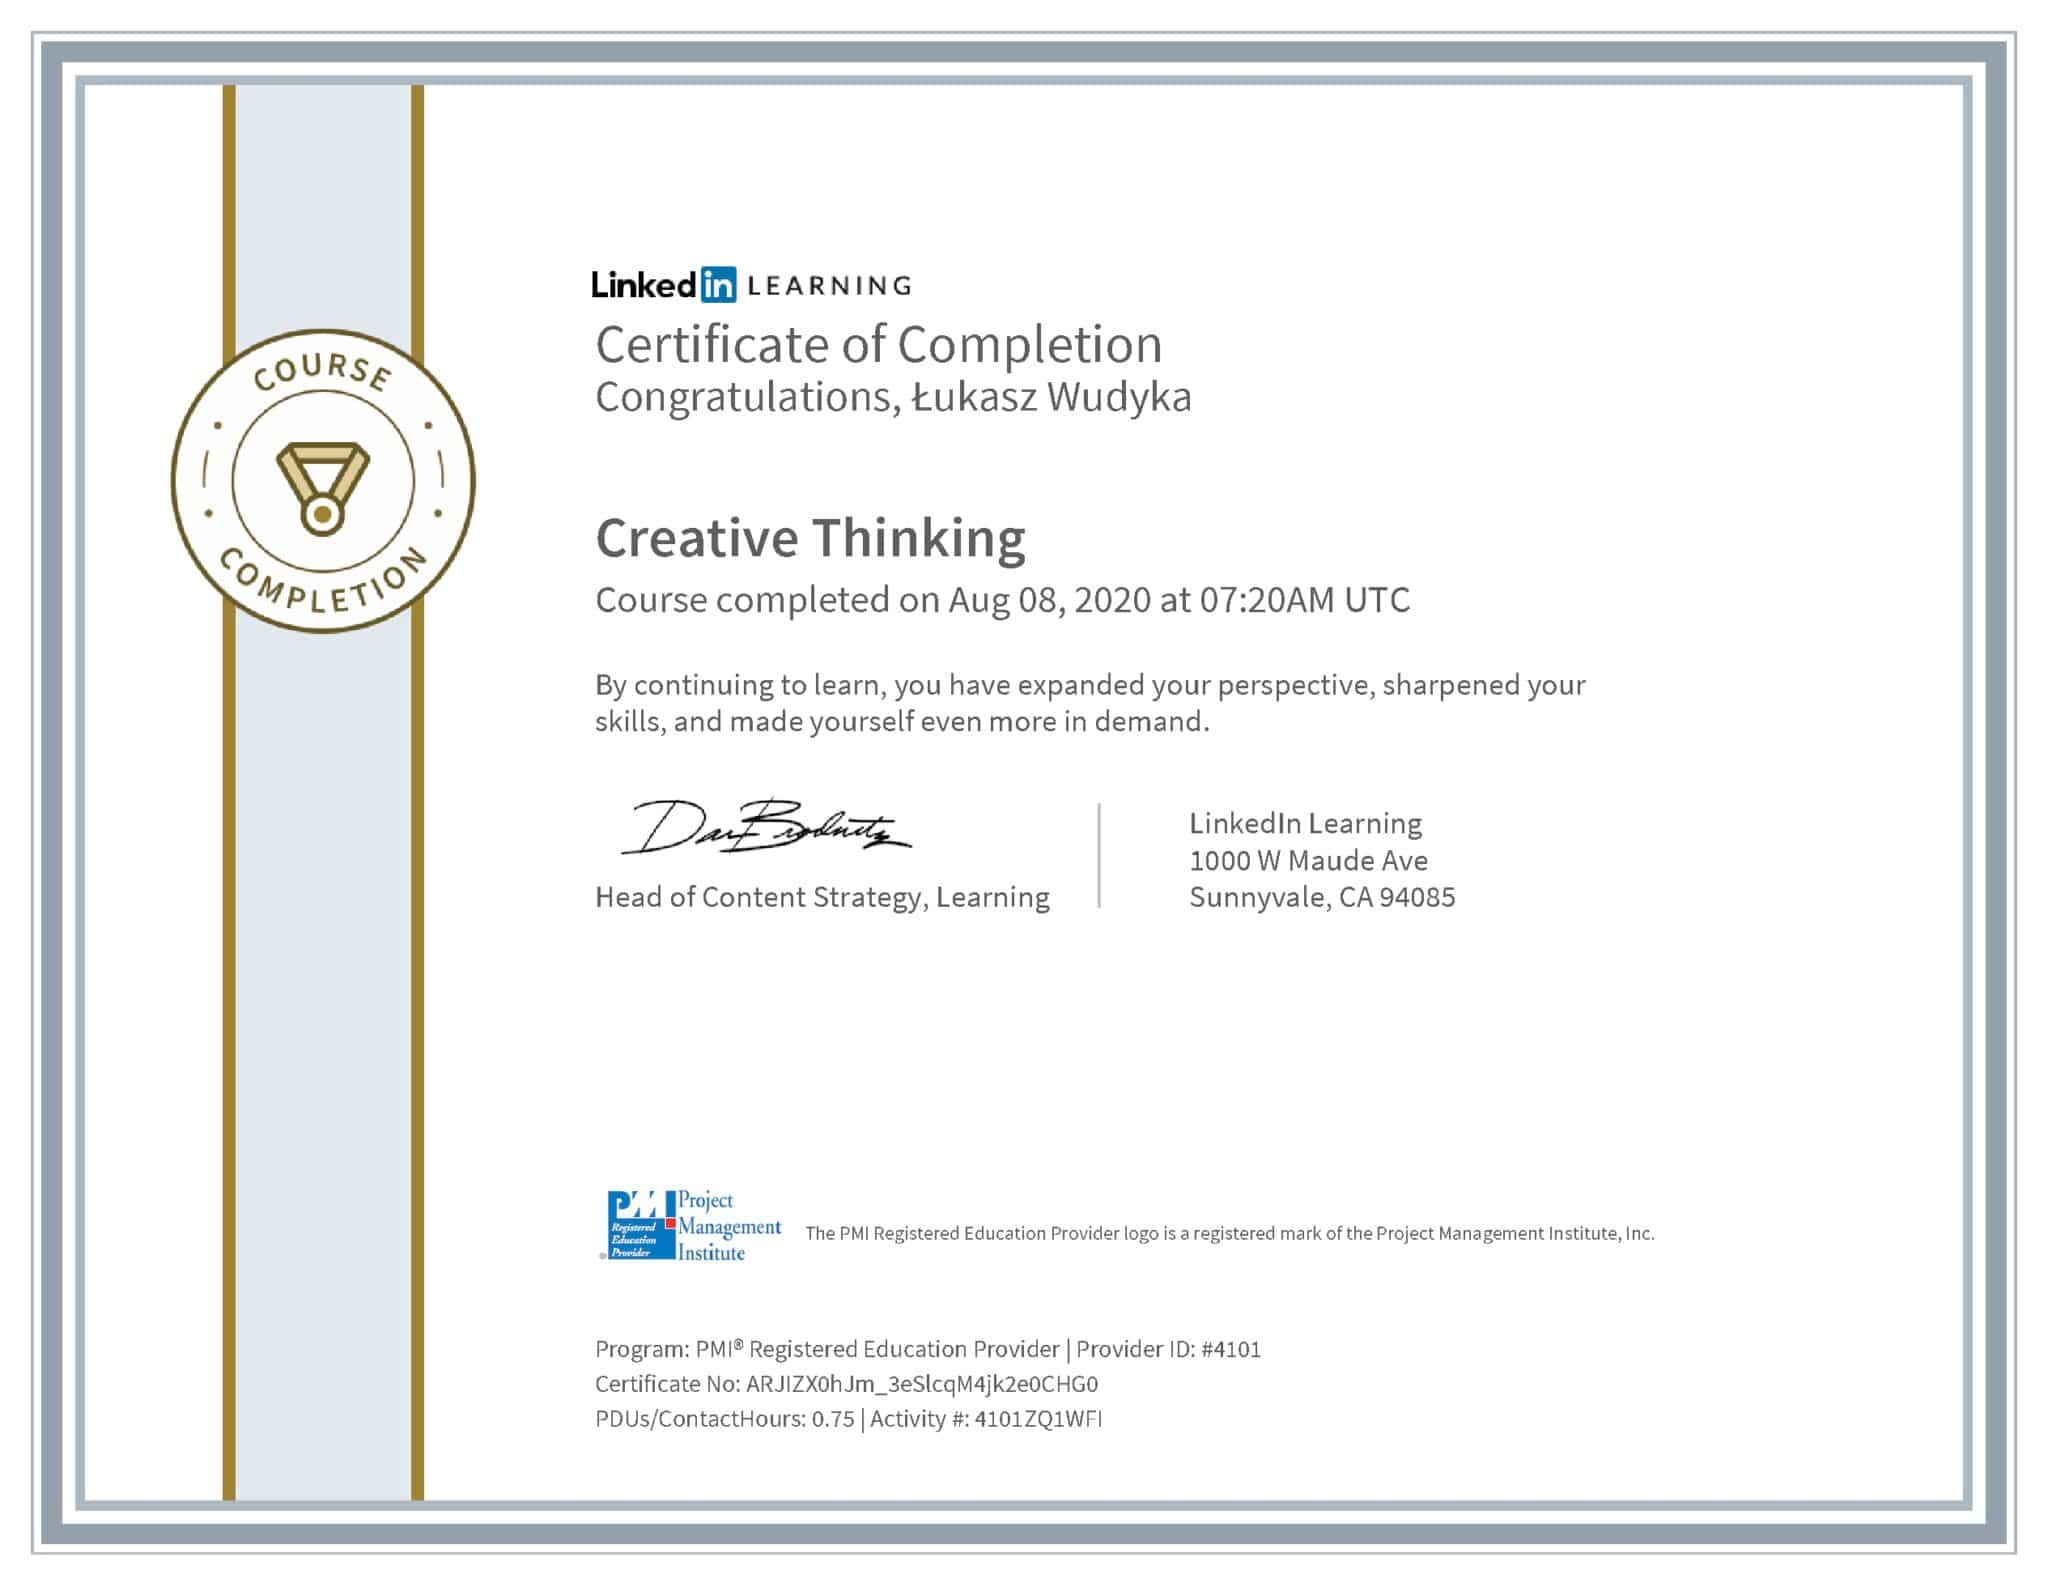 Łukasz Wudyka certyfikat LinkedIn Creative Thinking PMI